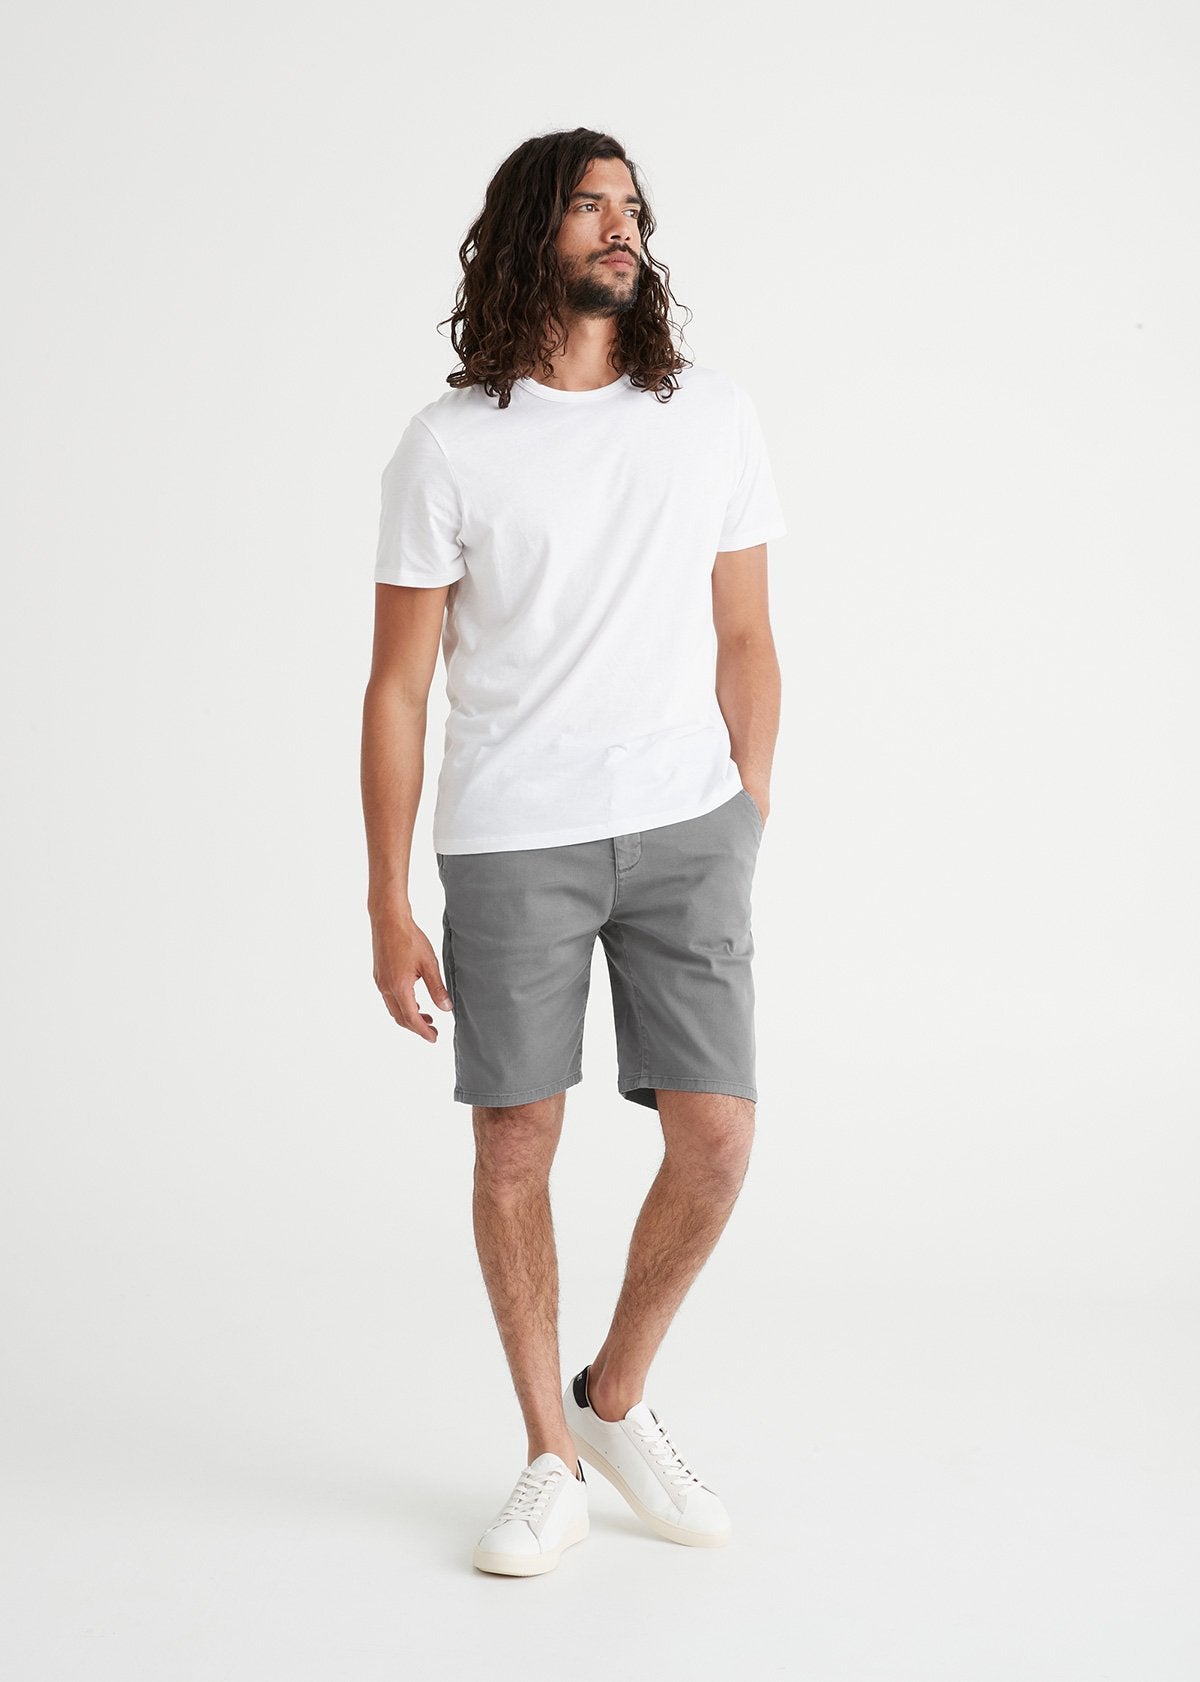 mens lightweight light grey shorts full body